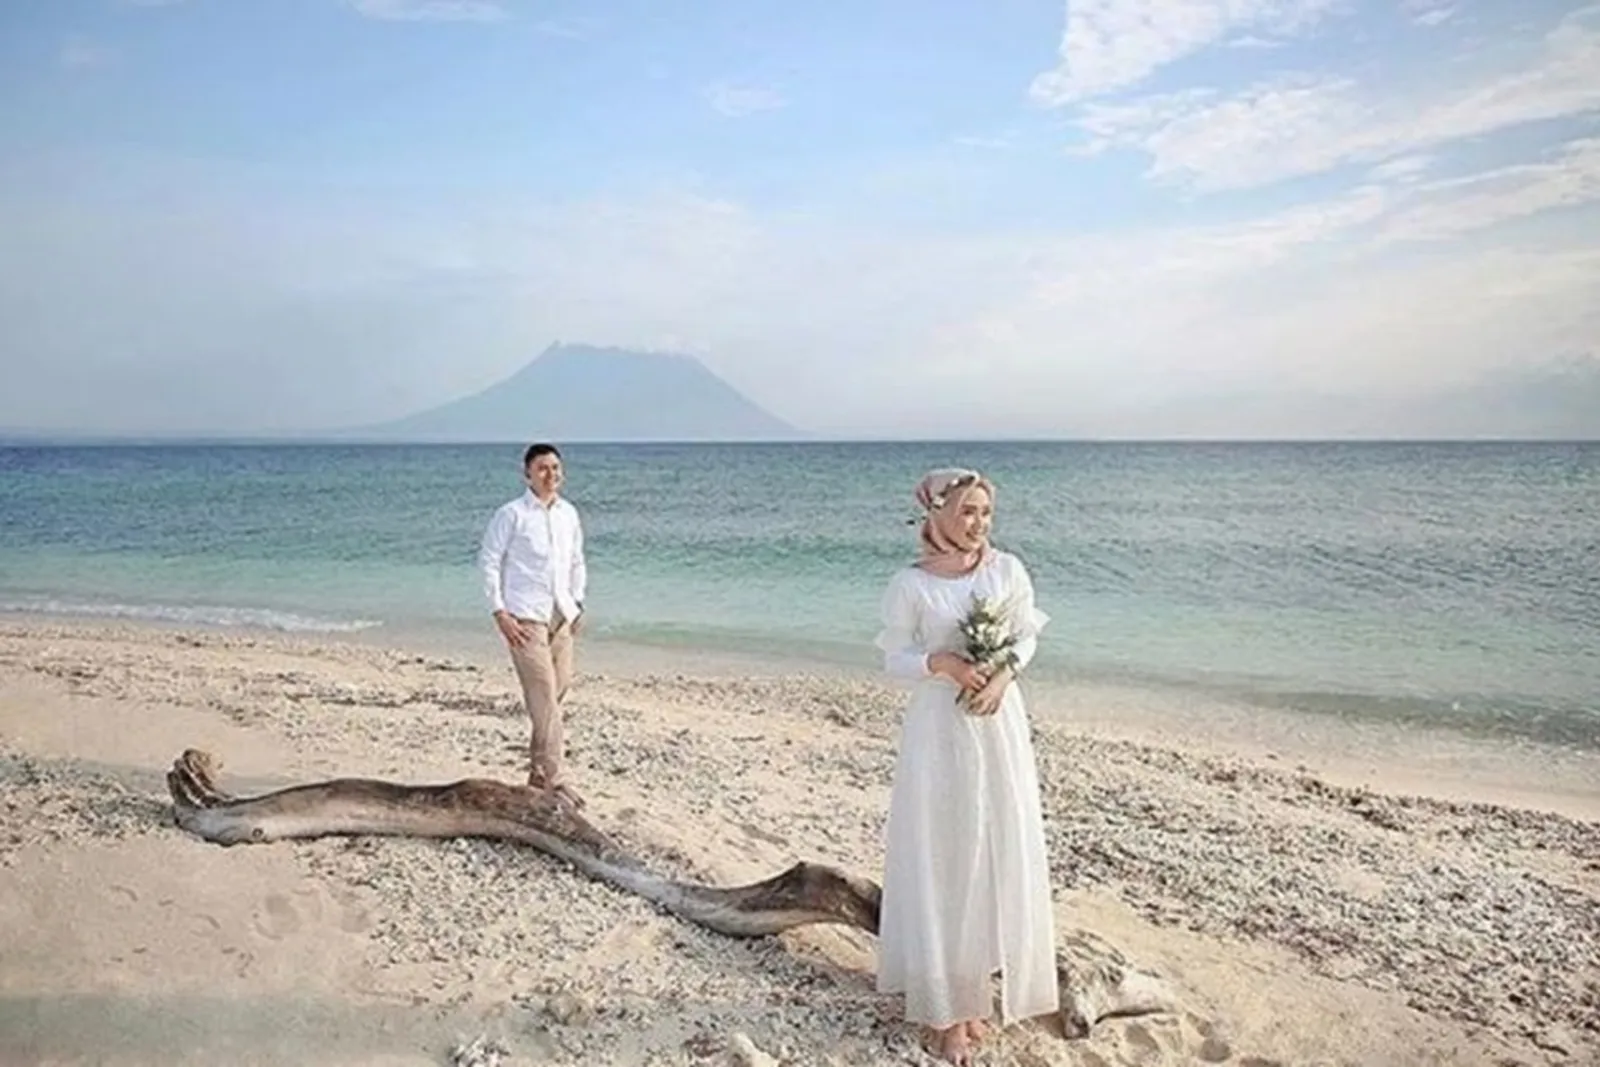 7 Foto Pre-Wedding di Pantai Berhijab, Intim nan Berkesan